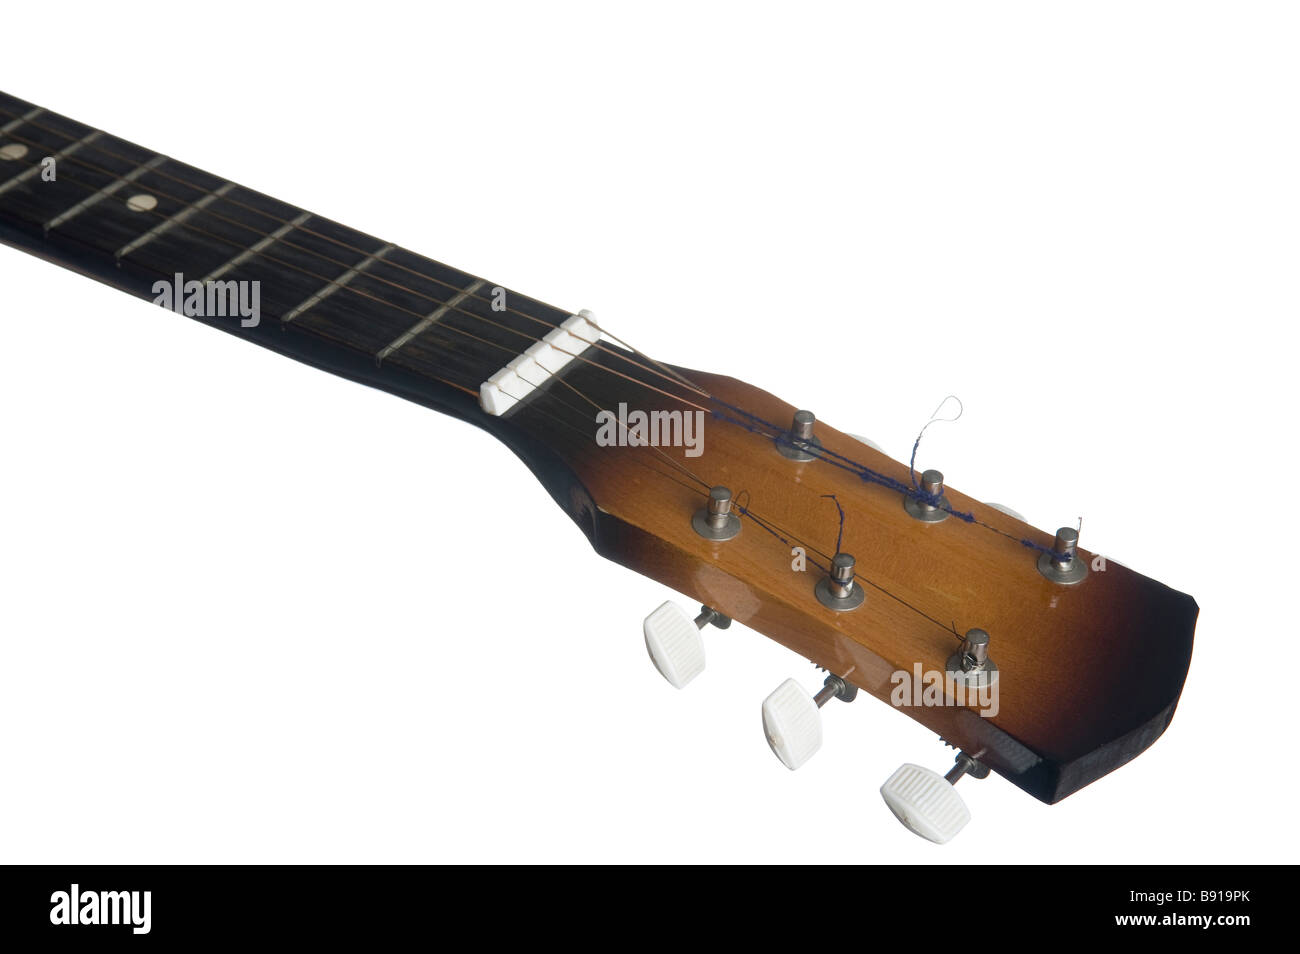 Objeto en blanco cabeza guitarra instrumentos musicales Foto de stock